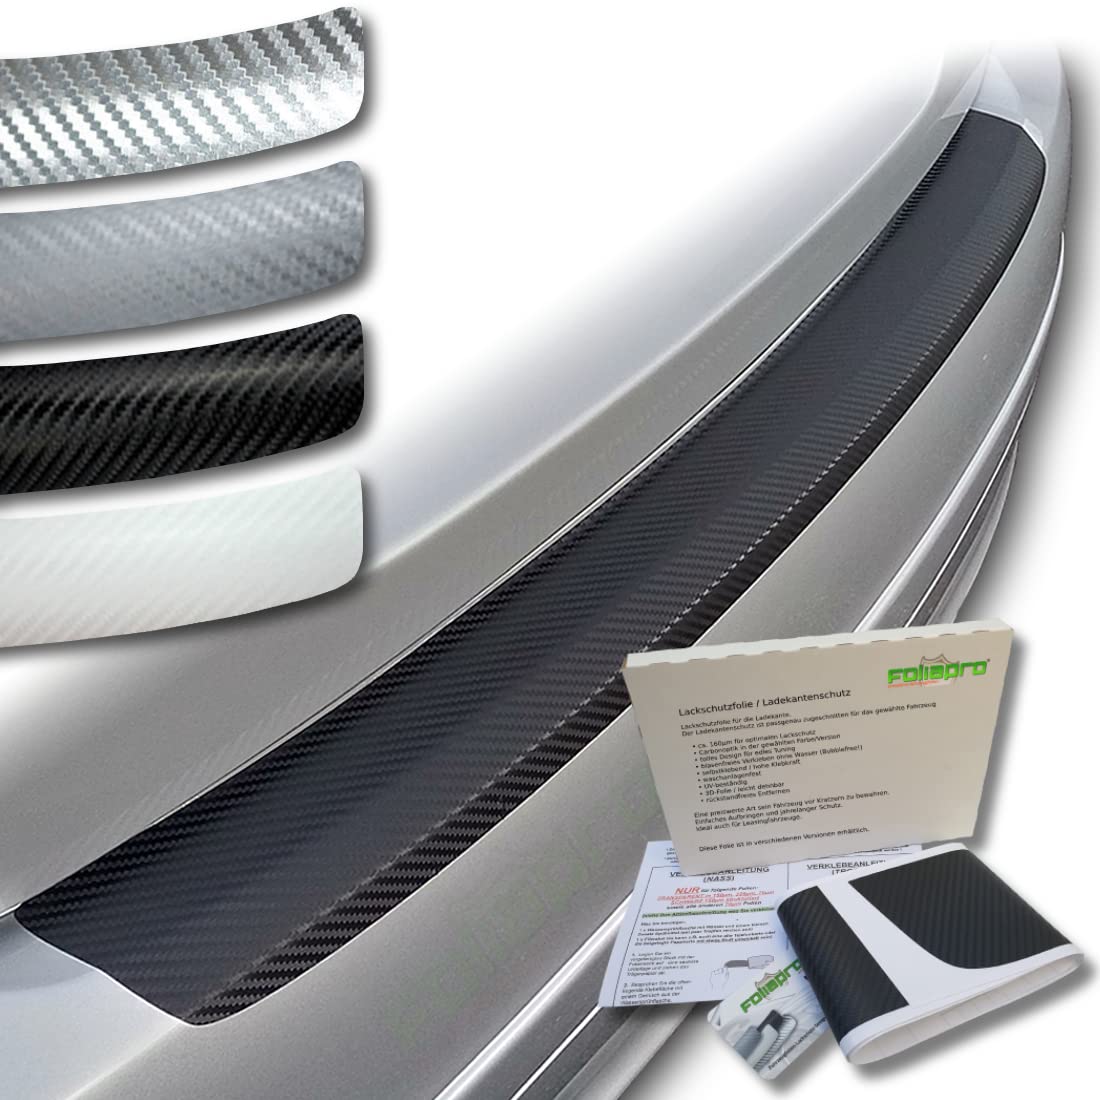 foliapro Lackschutzfolie Ladekantenschutz-Folie Carbonfolie Carbon - Fahrzeug und Foliensorte wählbar - für BMW X3 F25 ab 2010 bis 2017 - Carbon Silber von foliapro